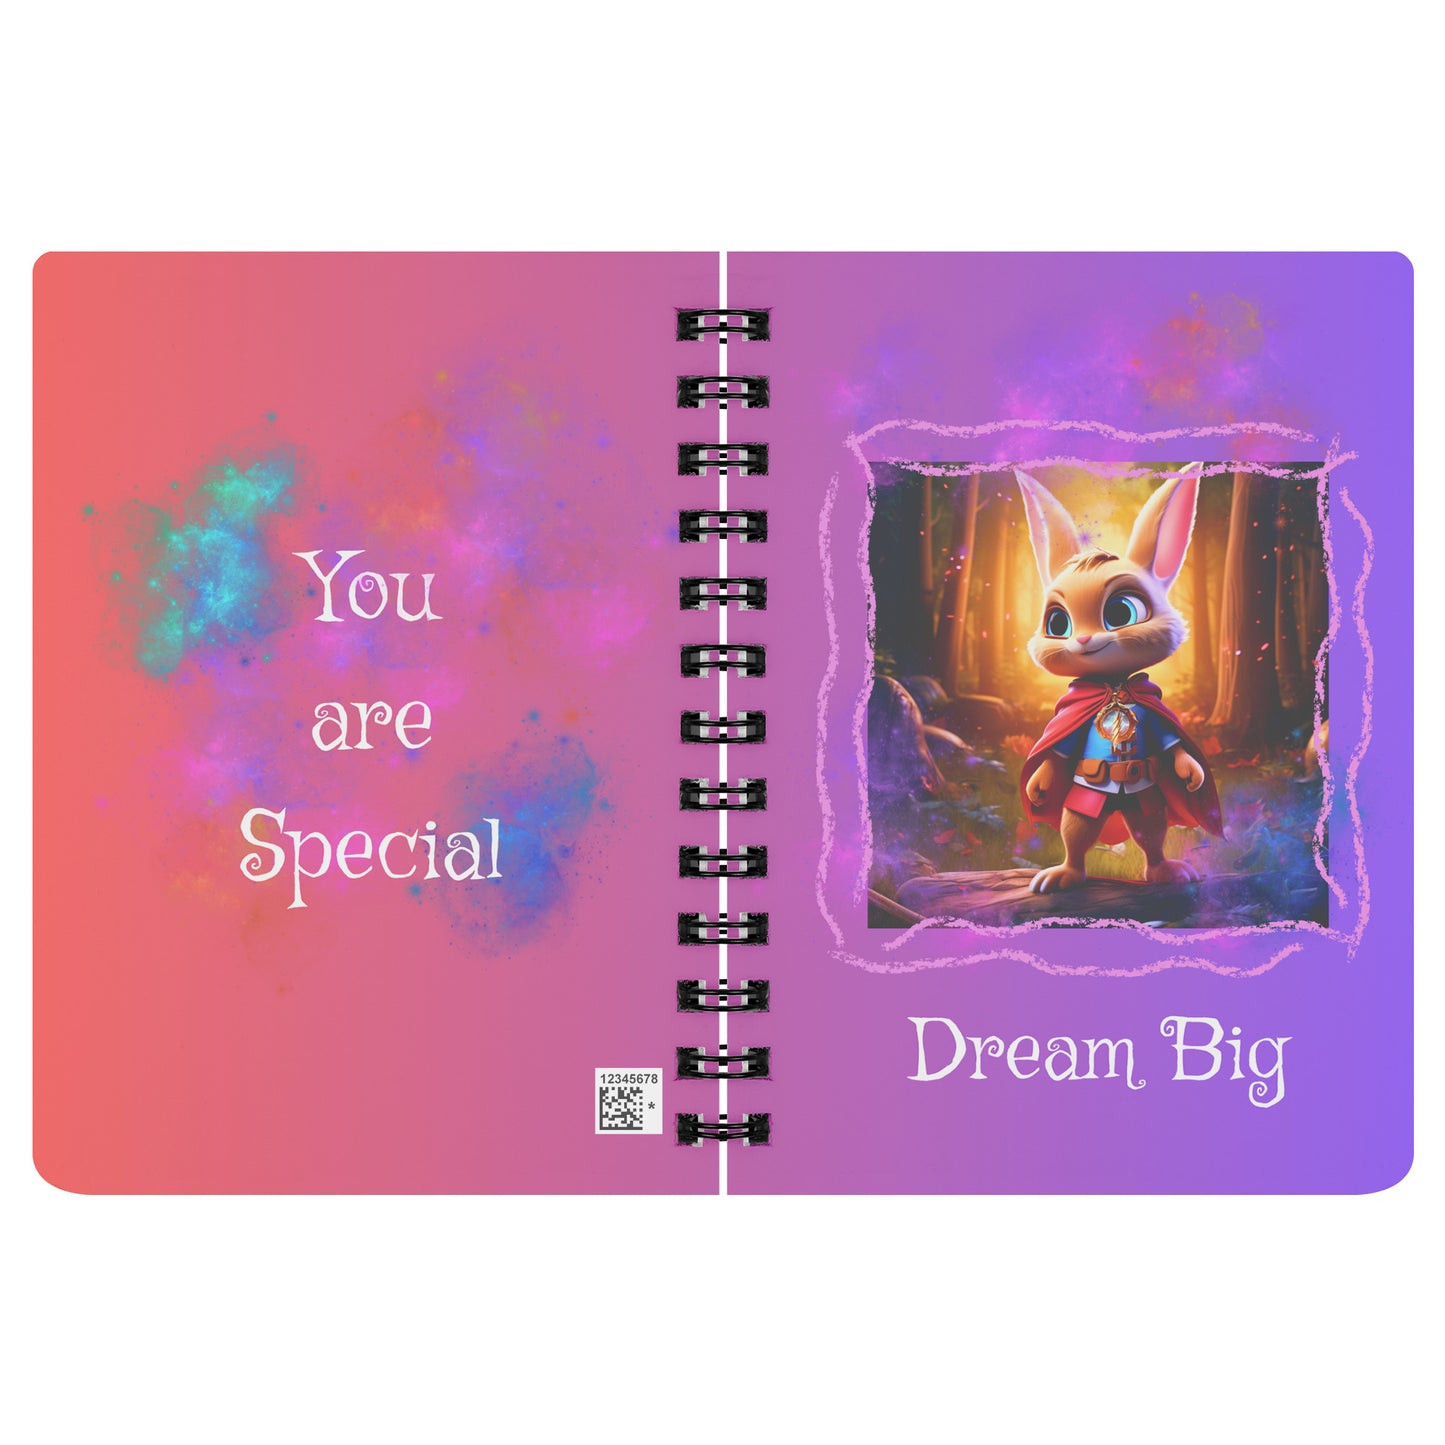 Cuaderno Espiral - Dream Big Superhero Rabbit